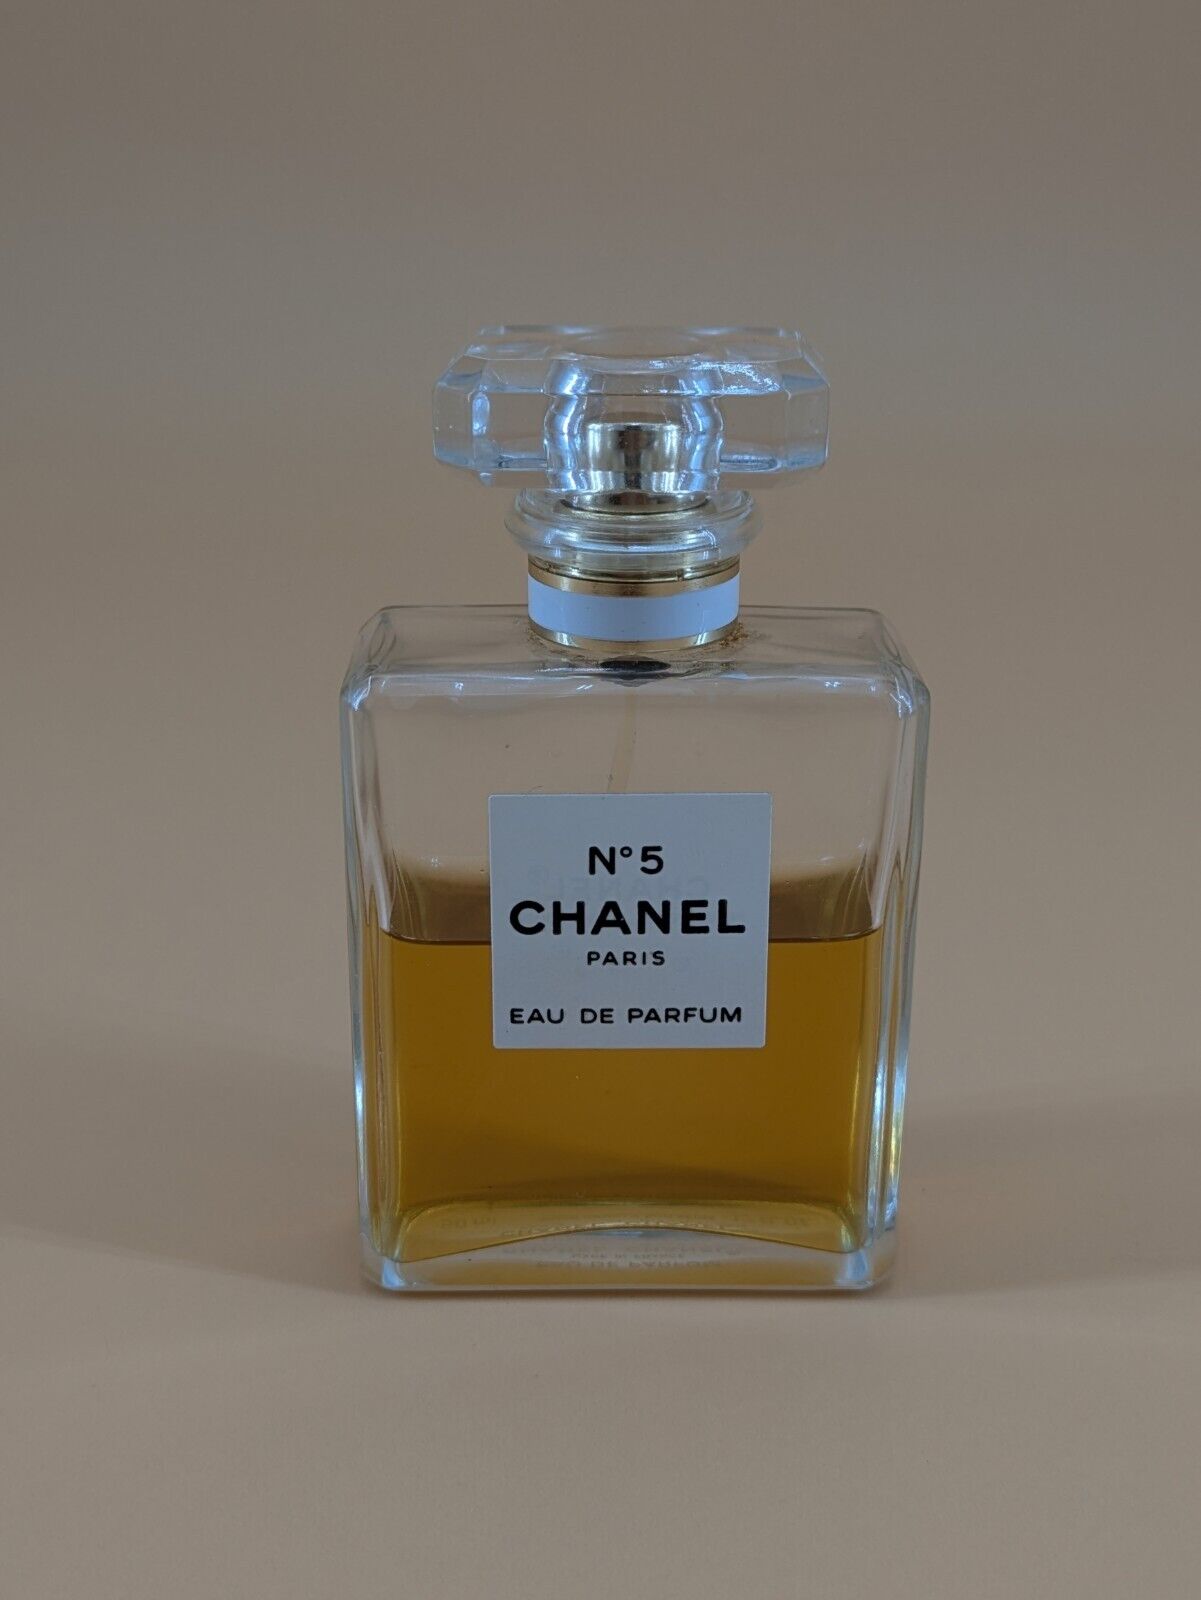 CHANEL No 5 by CHANEL 1.7 oz /50 ml EAU DE PARFUM Spray | About 60% Full